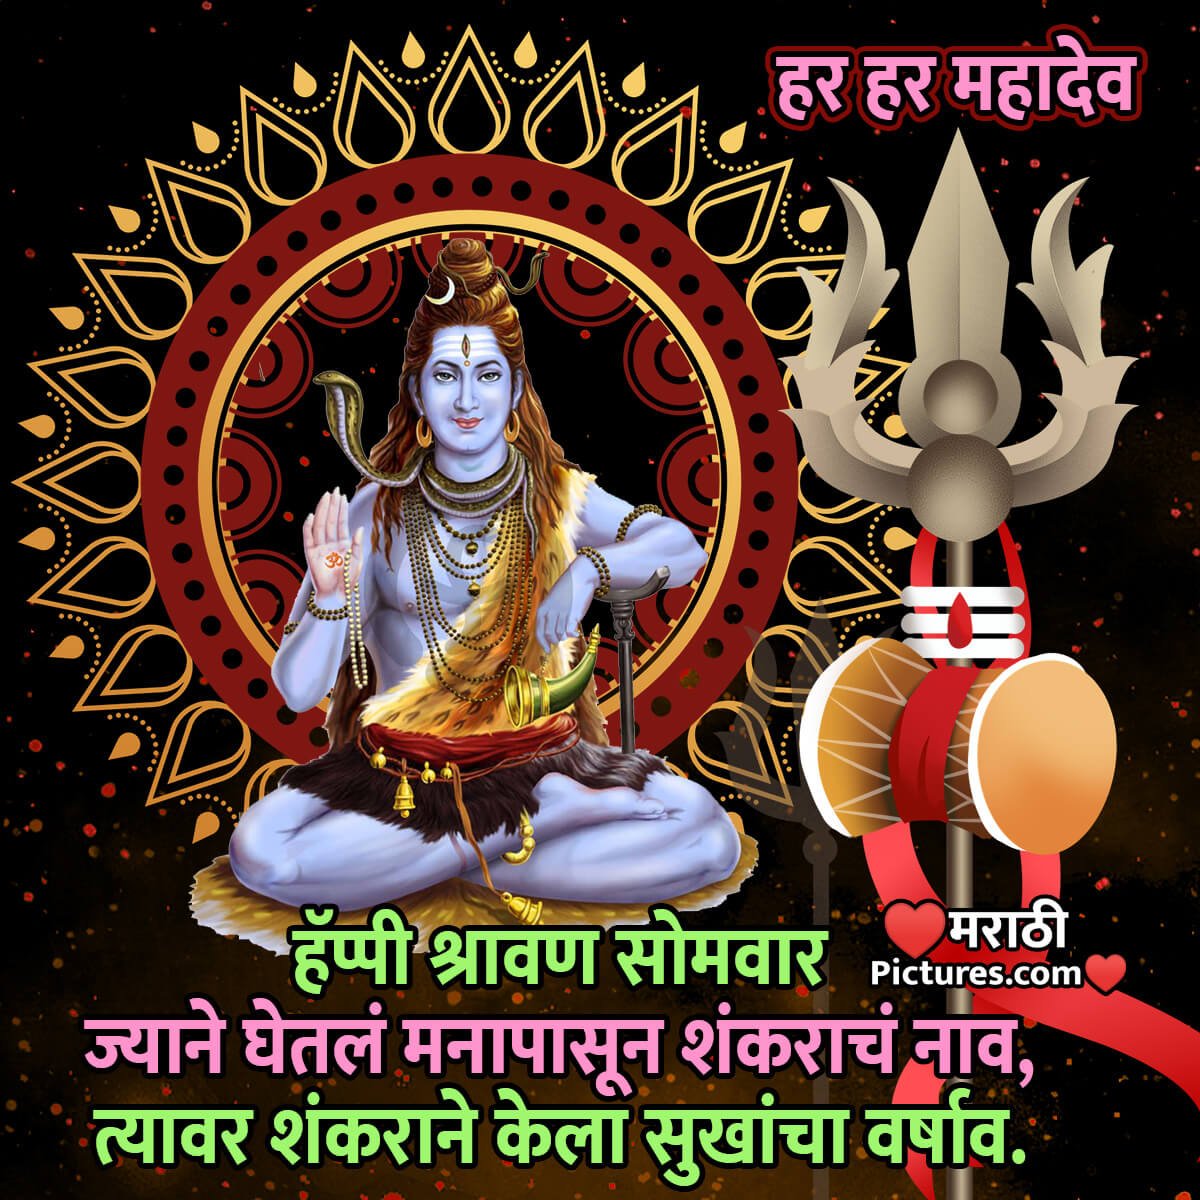 Happy Shravan Somvar